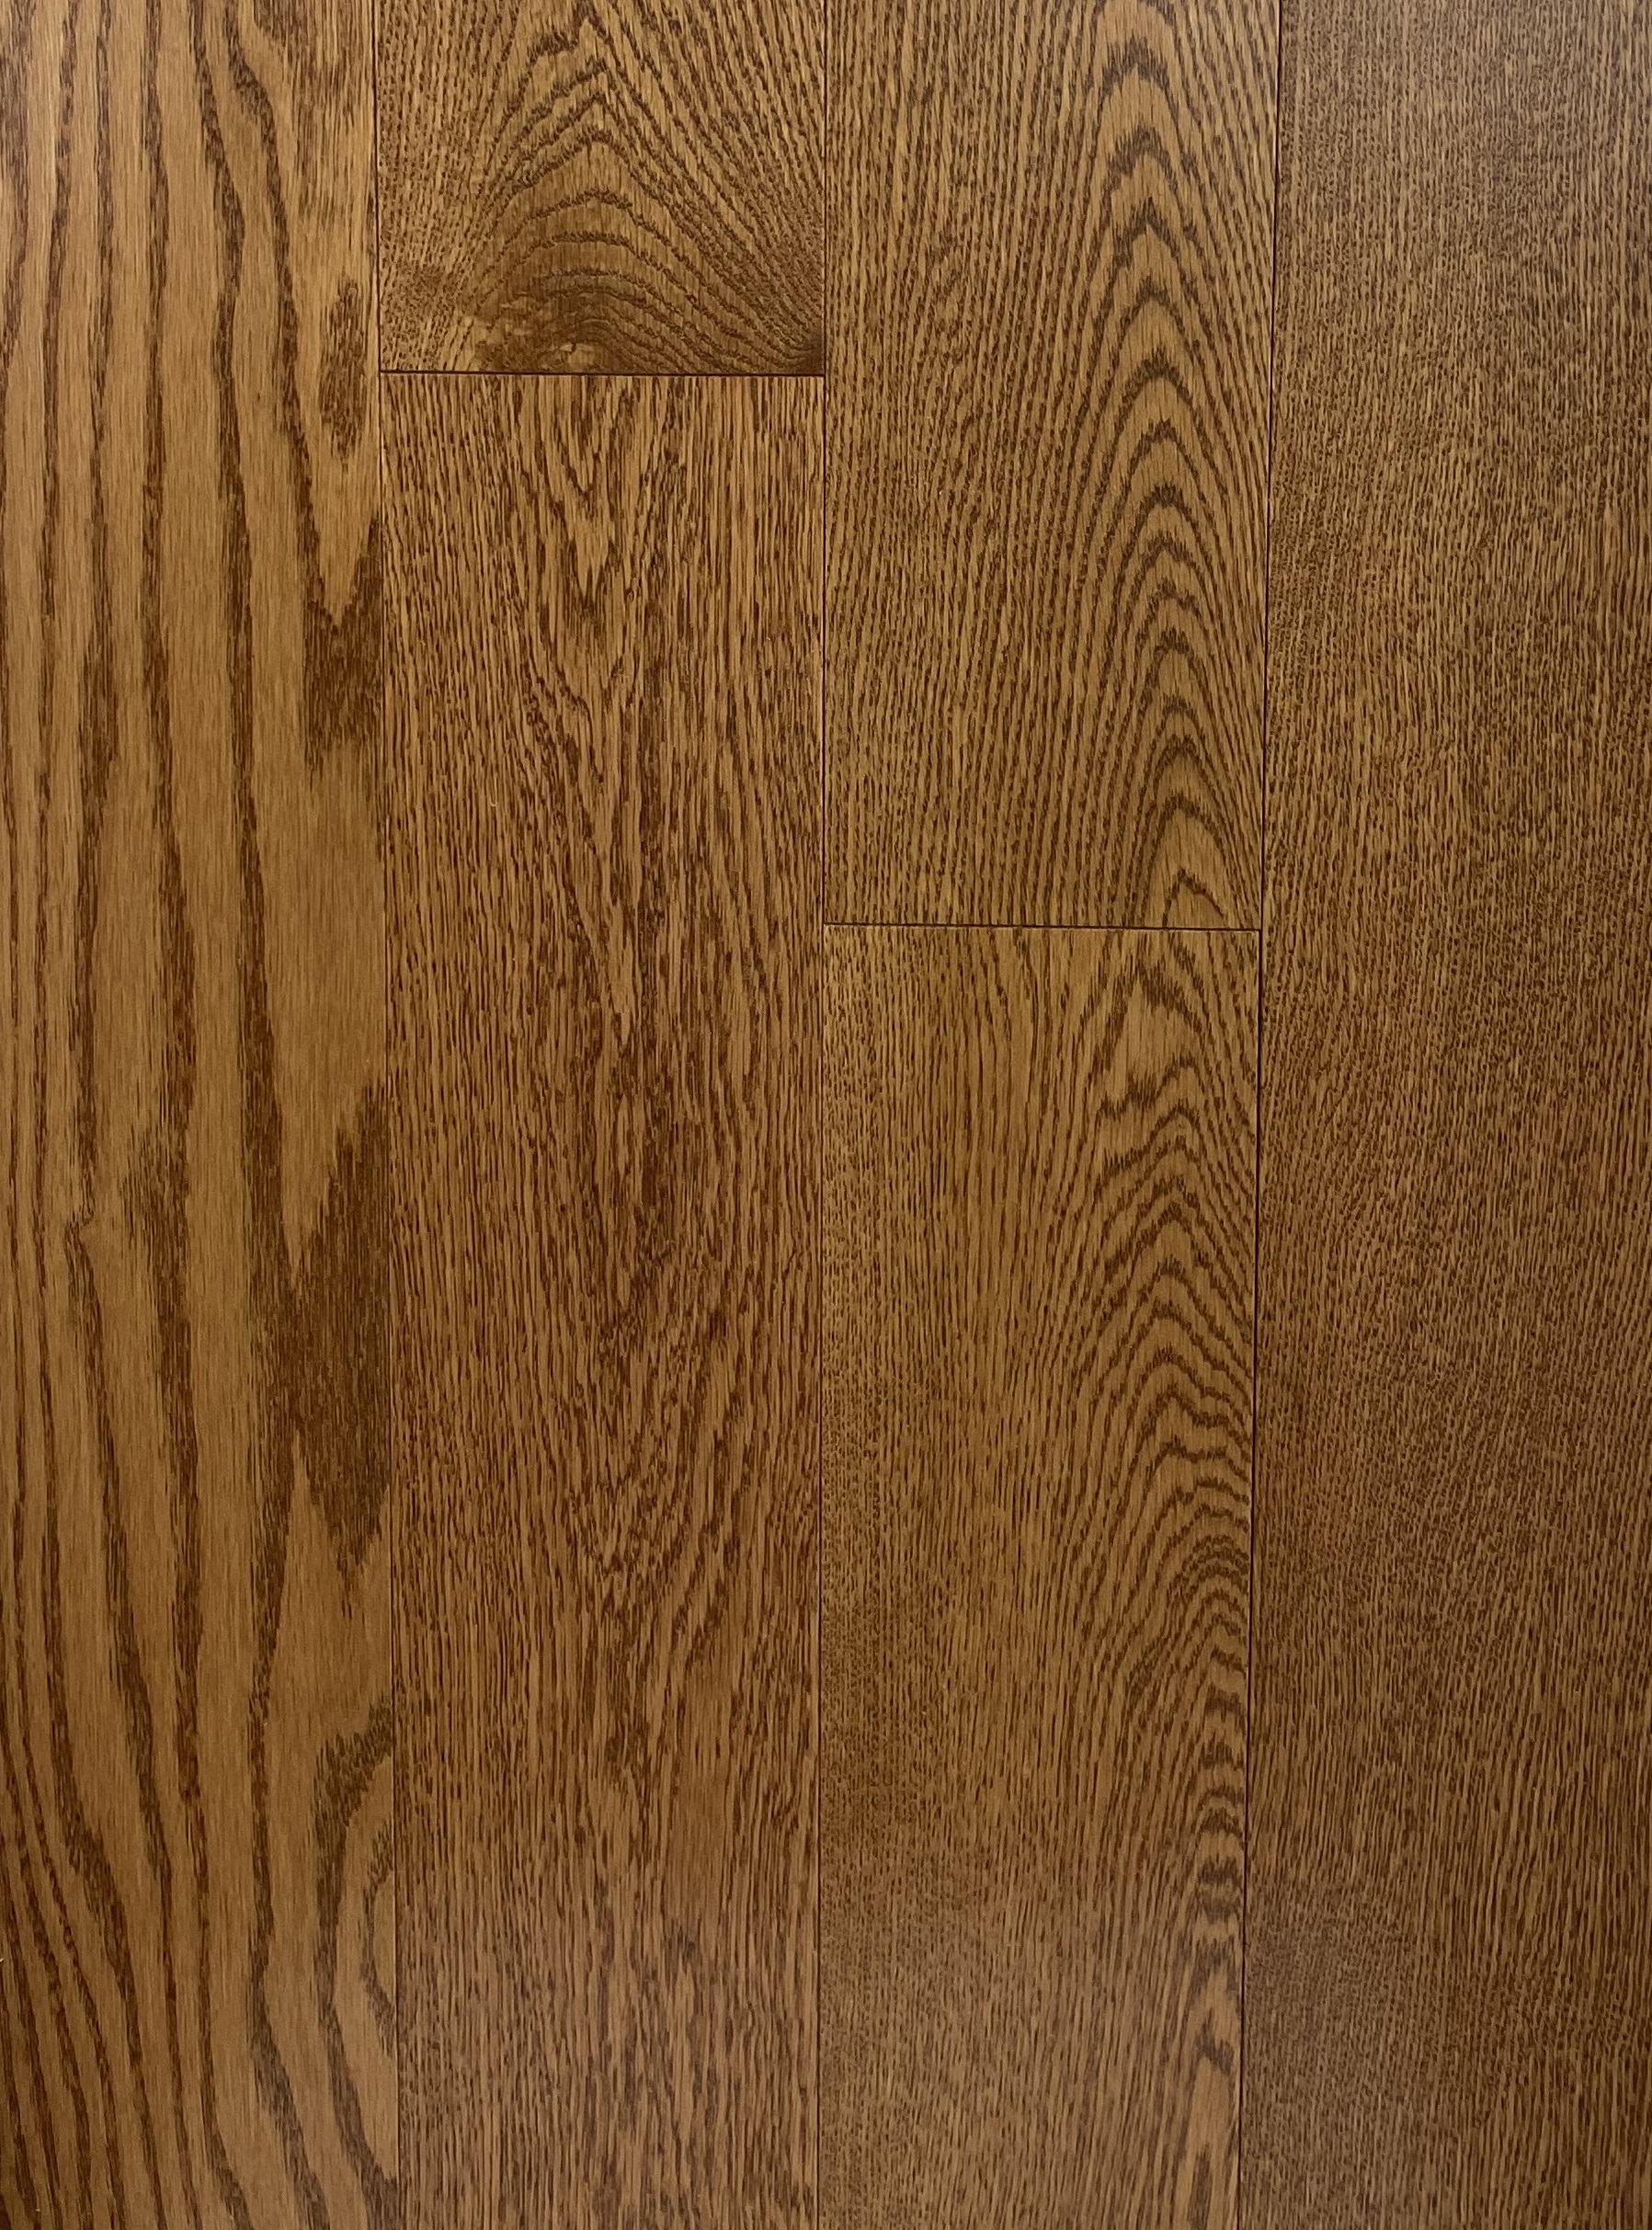 Ginger Pacific Lauzon Brampton, Lauzon Wood Flooring Reviews